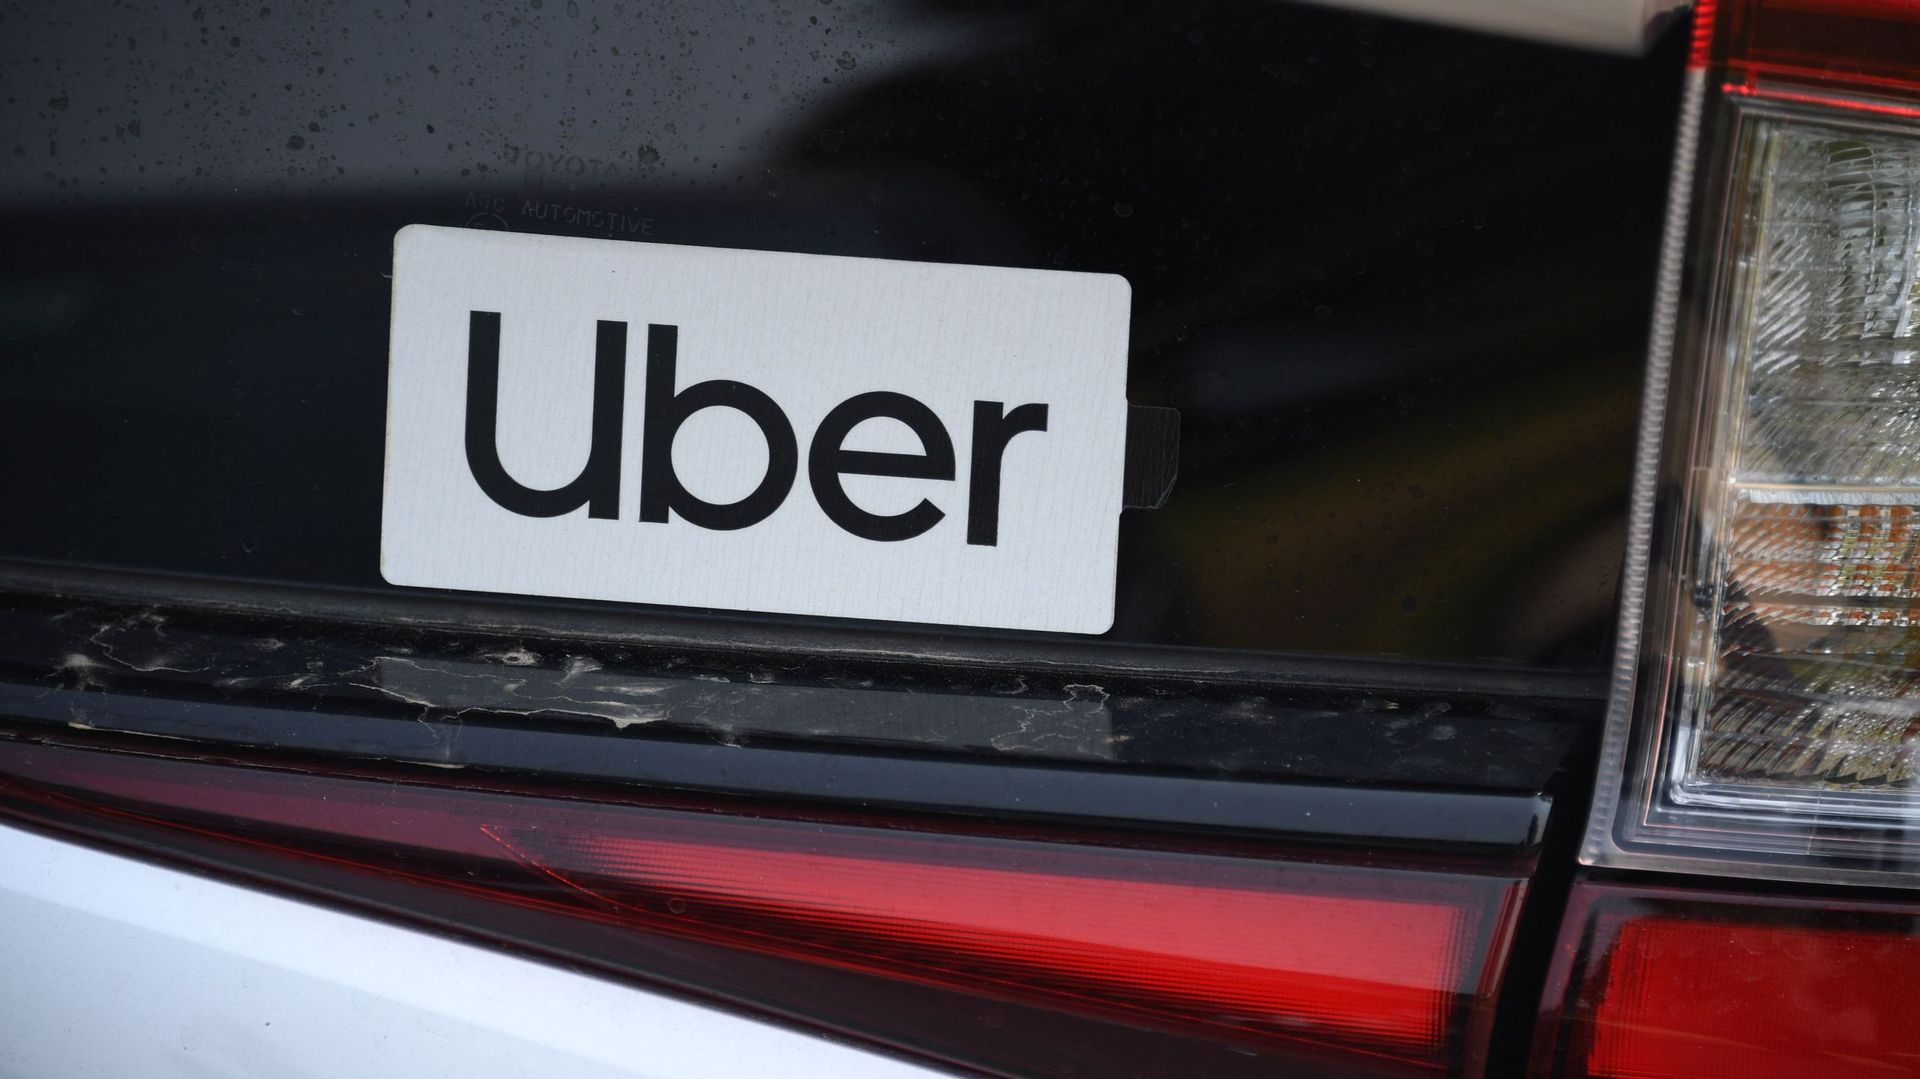 Cour d'appel de Bruxelles: "Uber est un service de taxi déguisé" selon la FeBet (2)